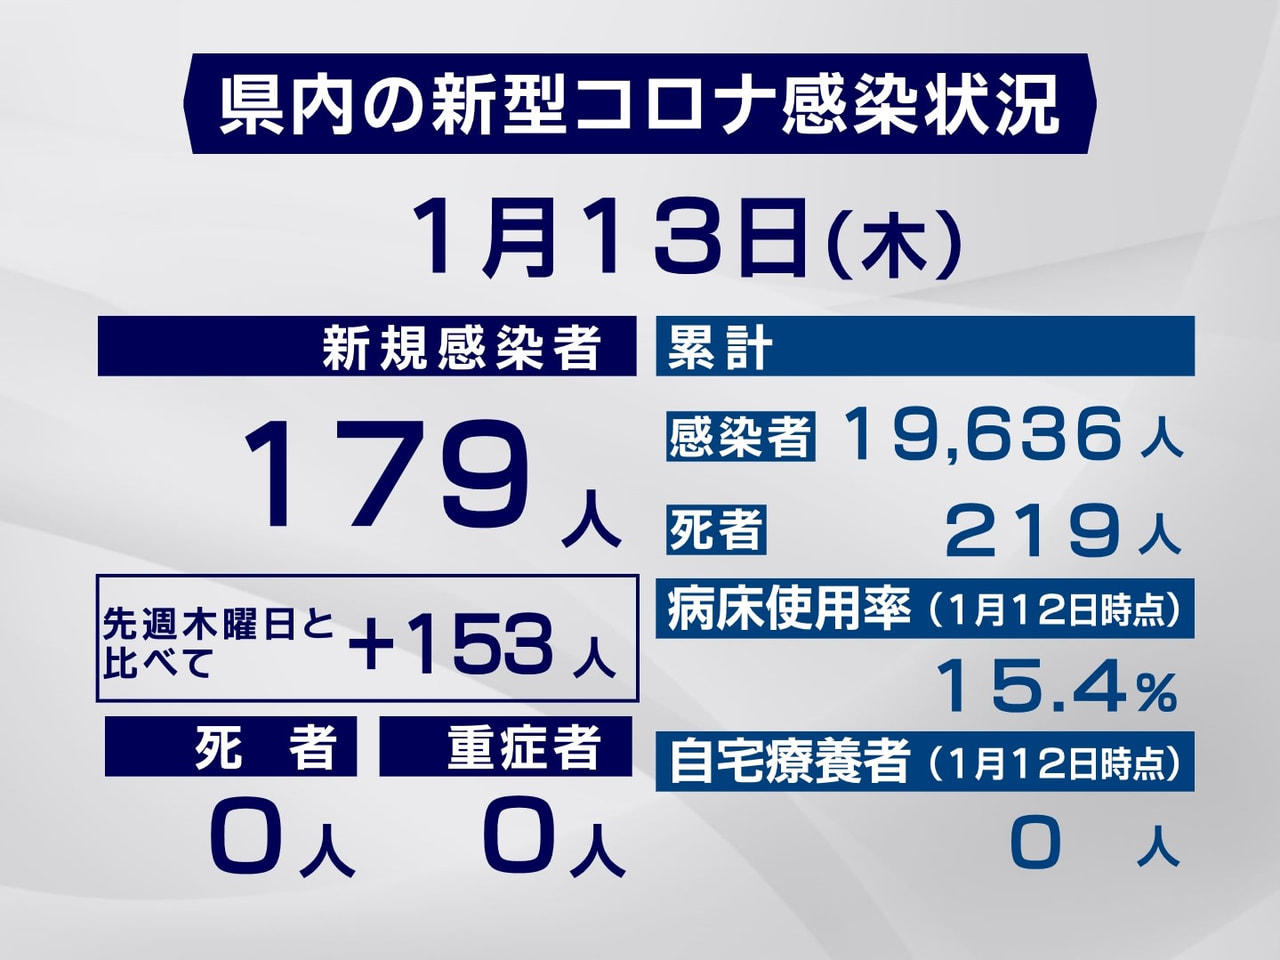 岐阜県は１３日、新型コロナウイルスへの感染が新たに１７９人確認されたと発表しまし...